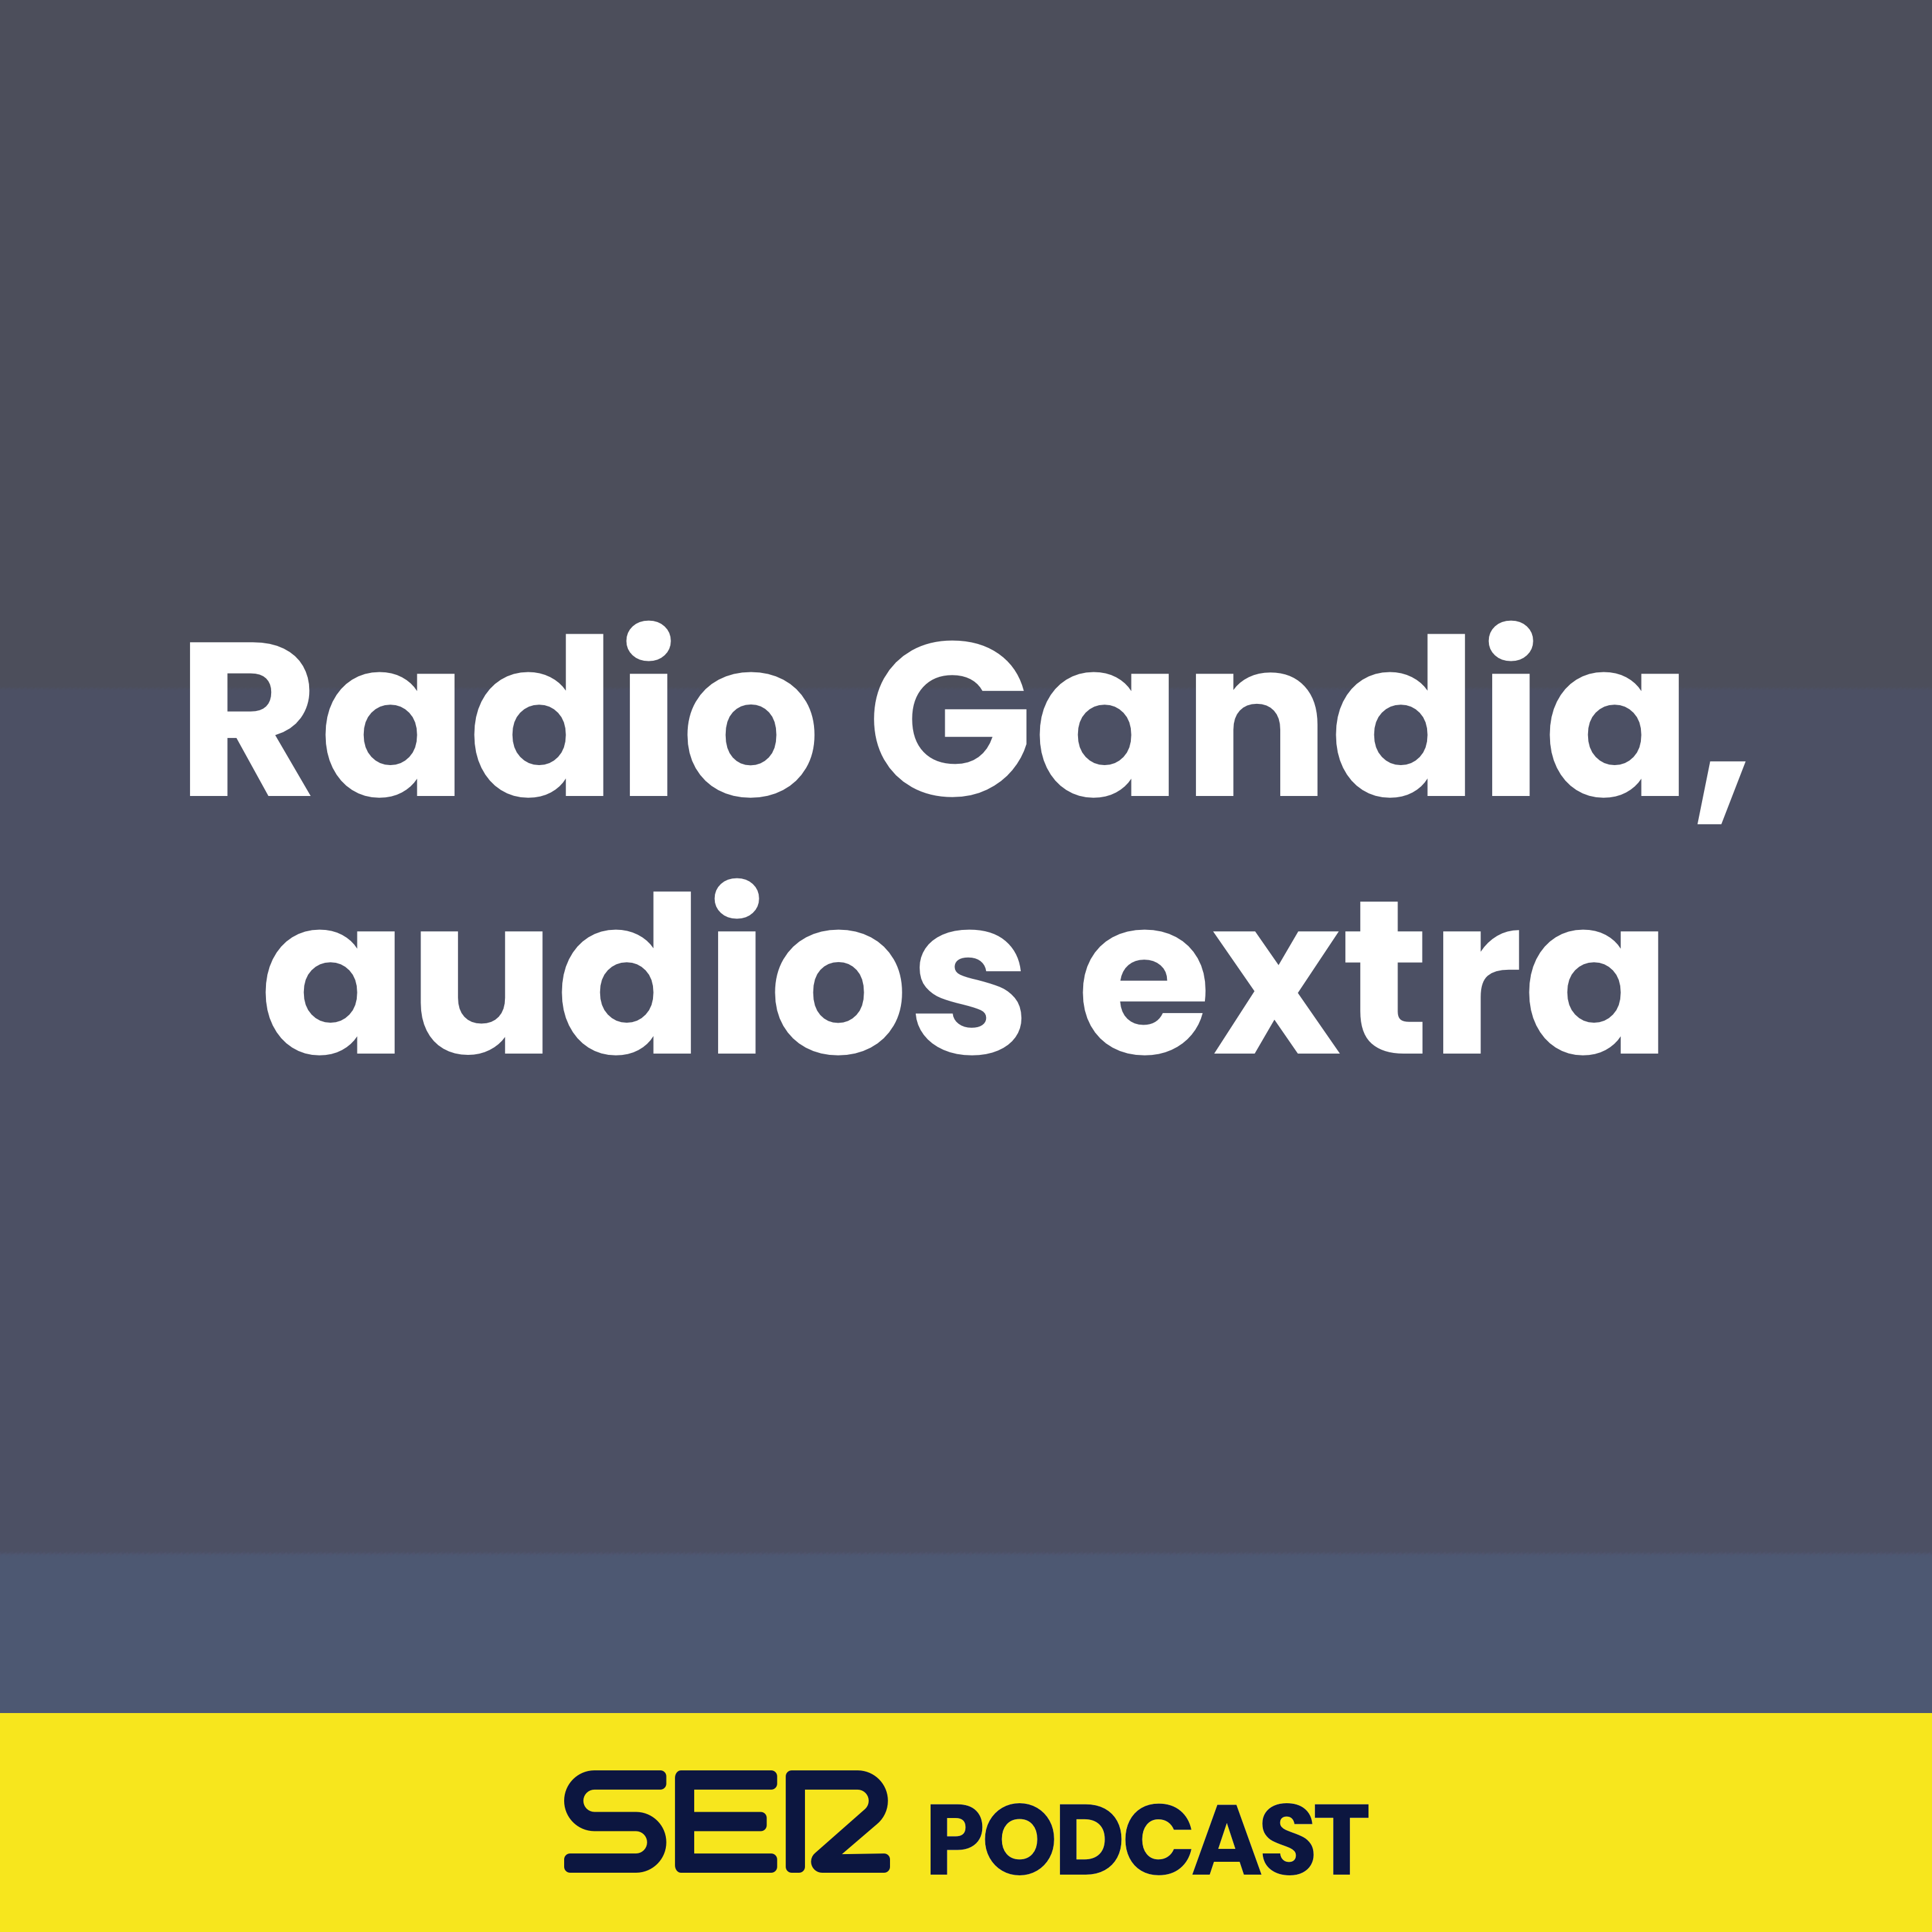 Radio Gandia, audios extra